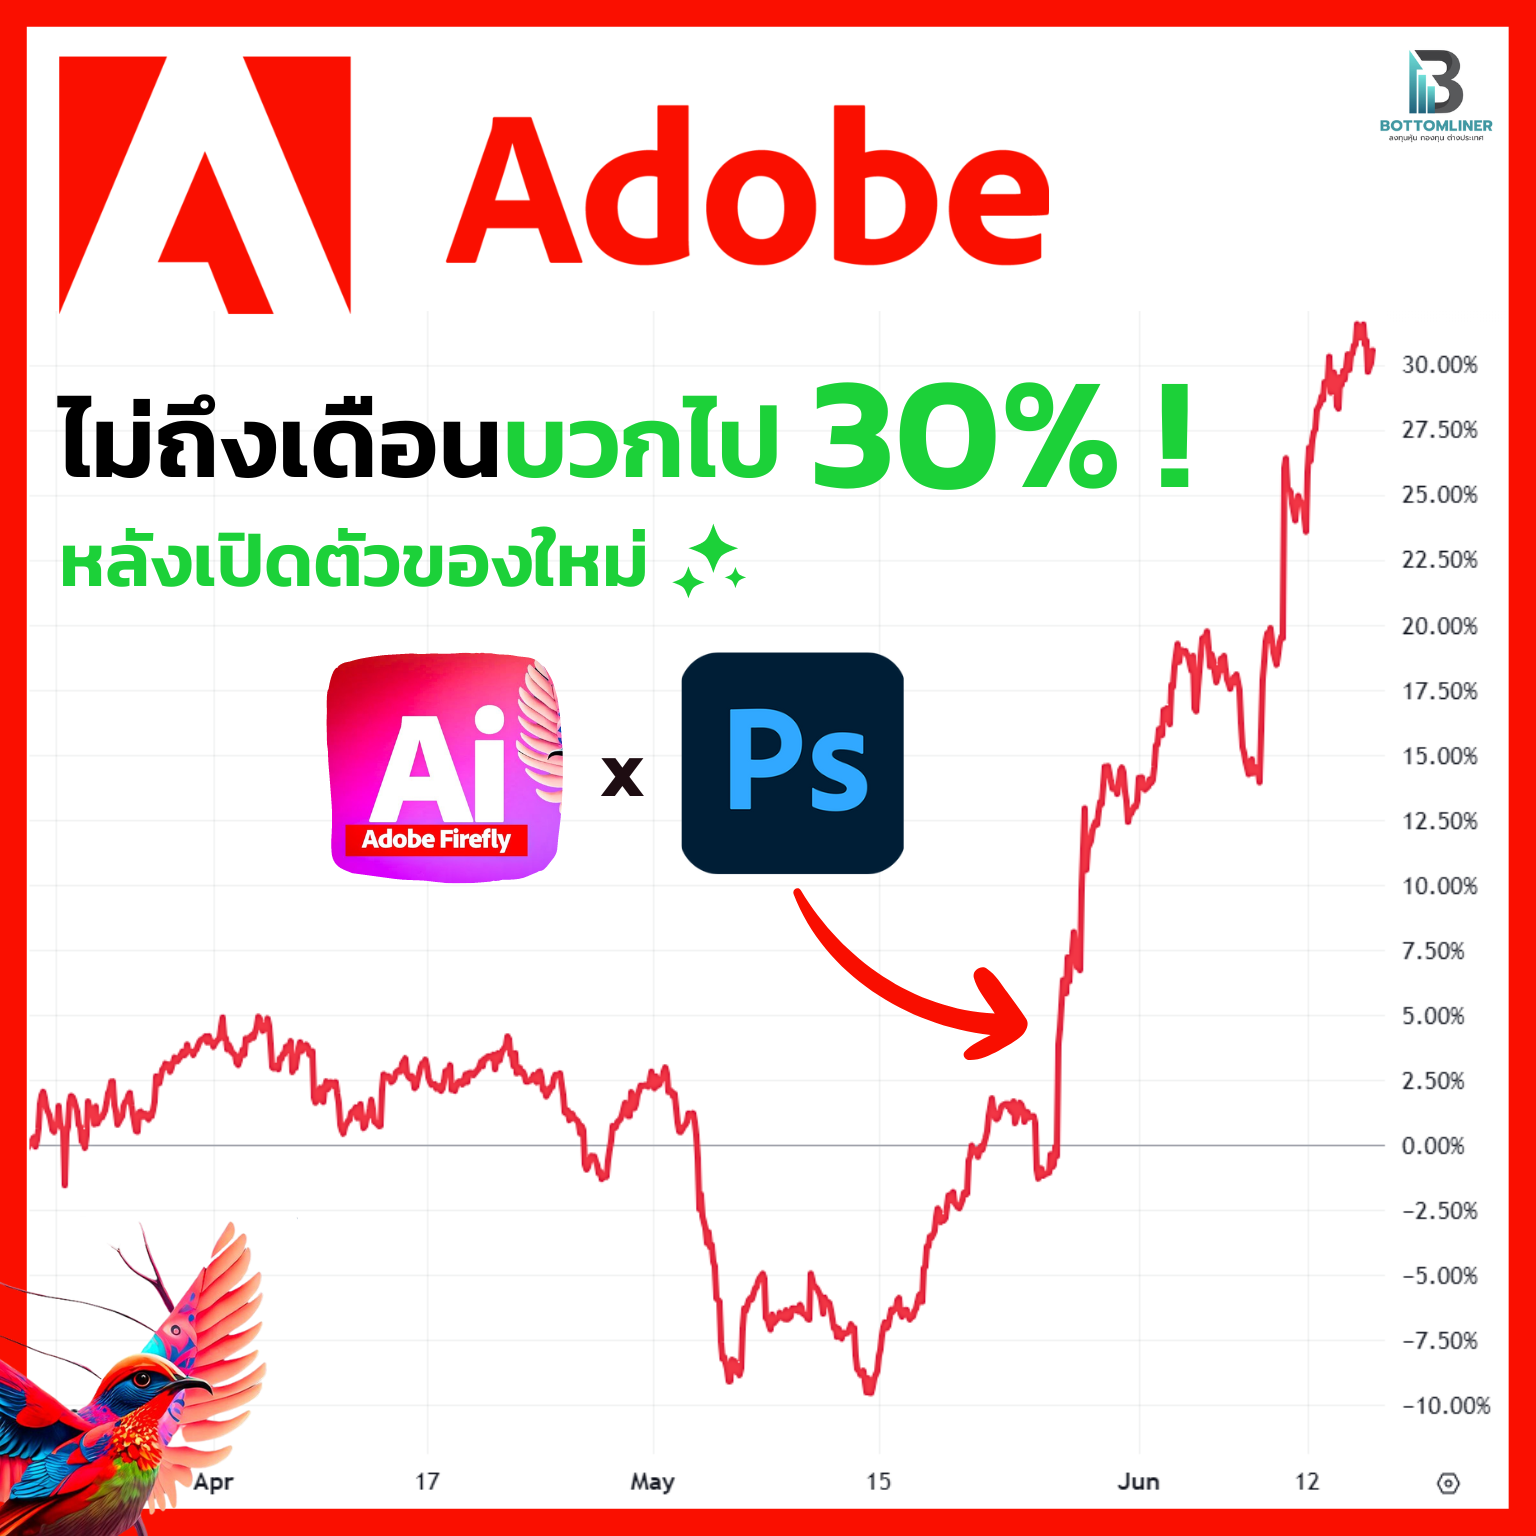 ไม่ถึงเดือนหุ้น Adobe บวกไป 30% แล้ว! หลังเริ่มใส่ AI มาให้ลองใช้ใน Photoshop ต่อจากนี้มีตามมาอีกเพียบ !  